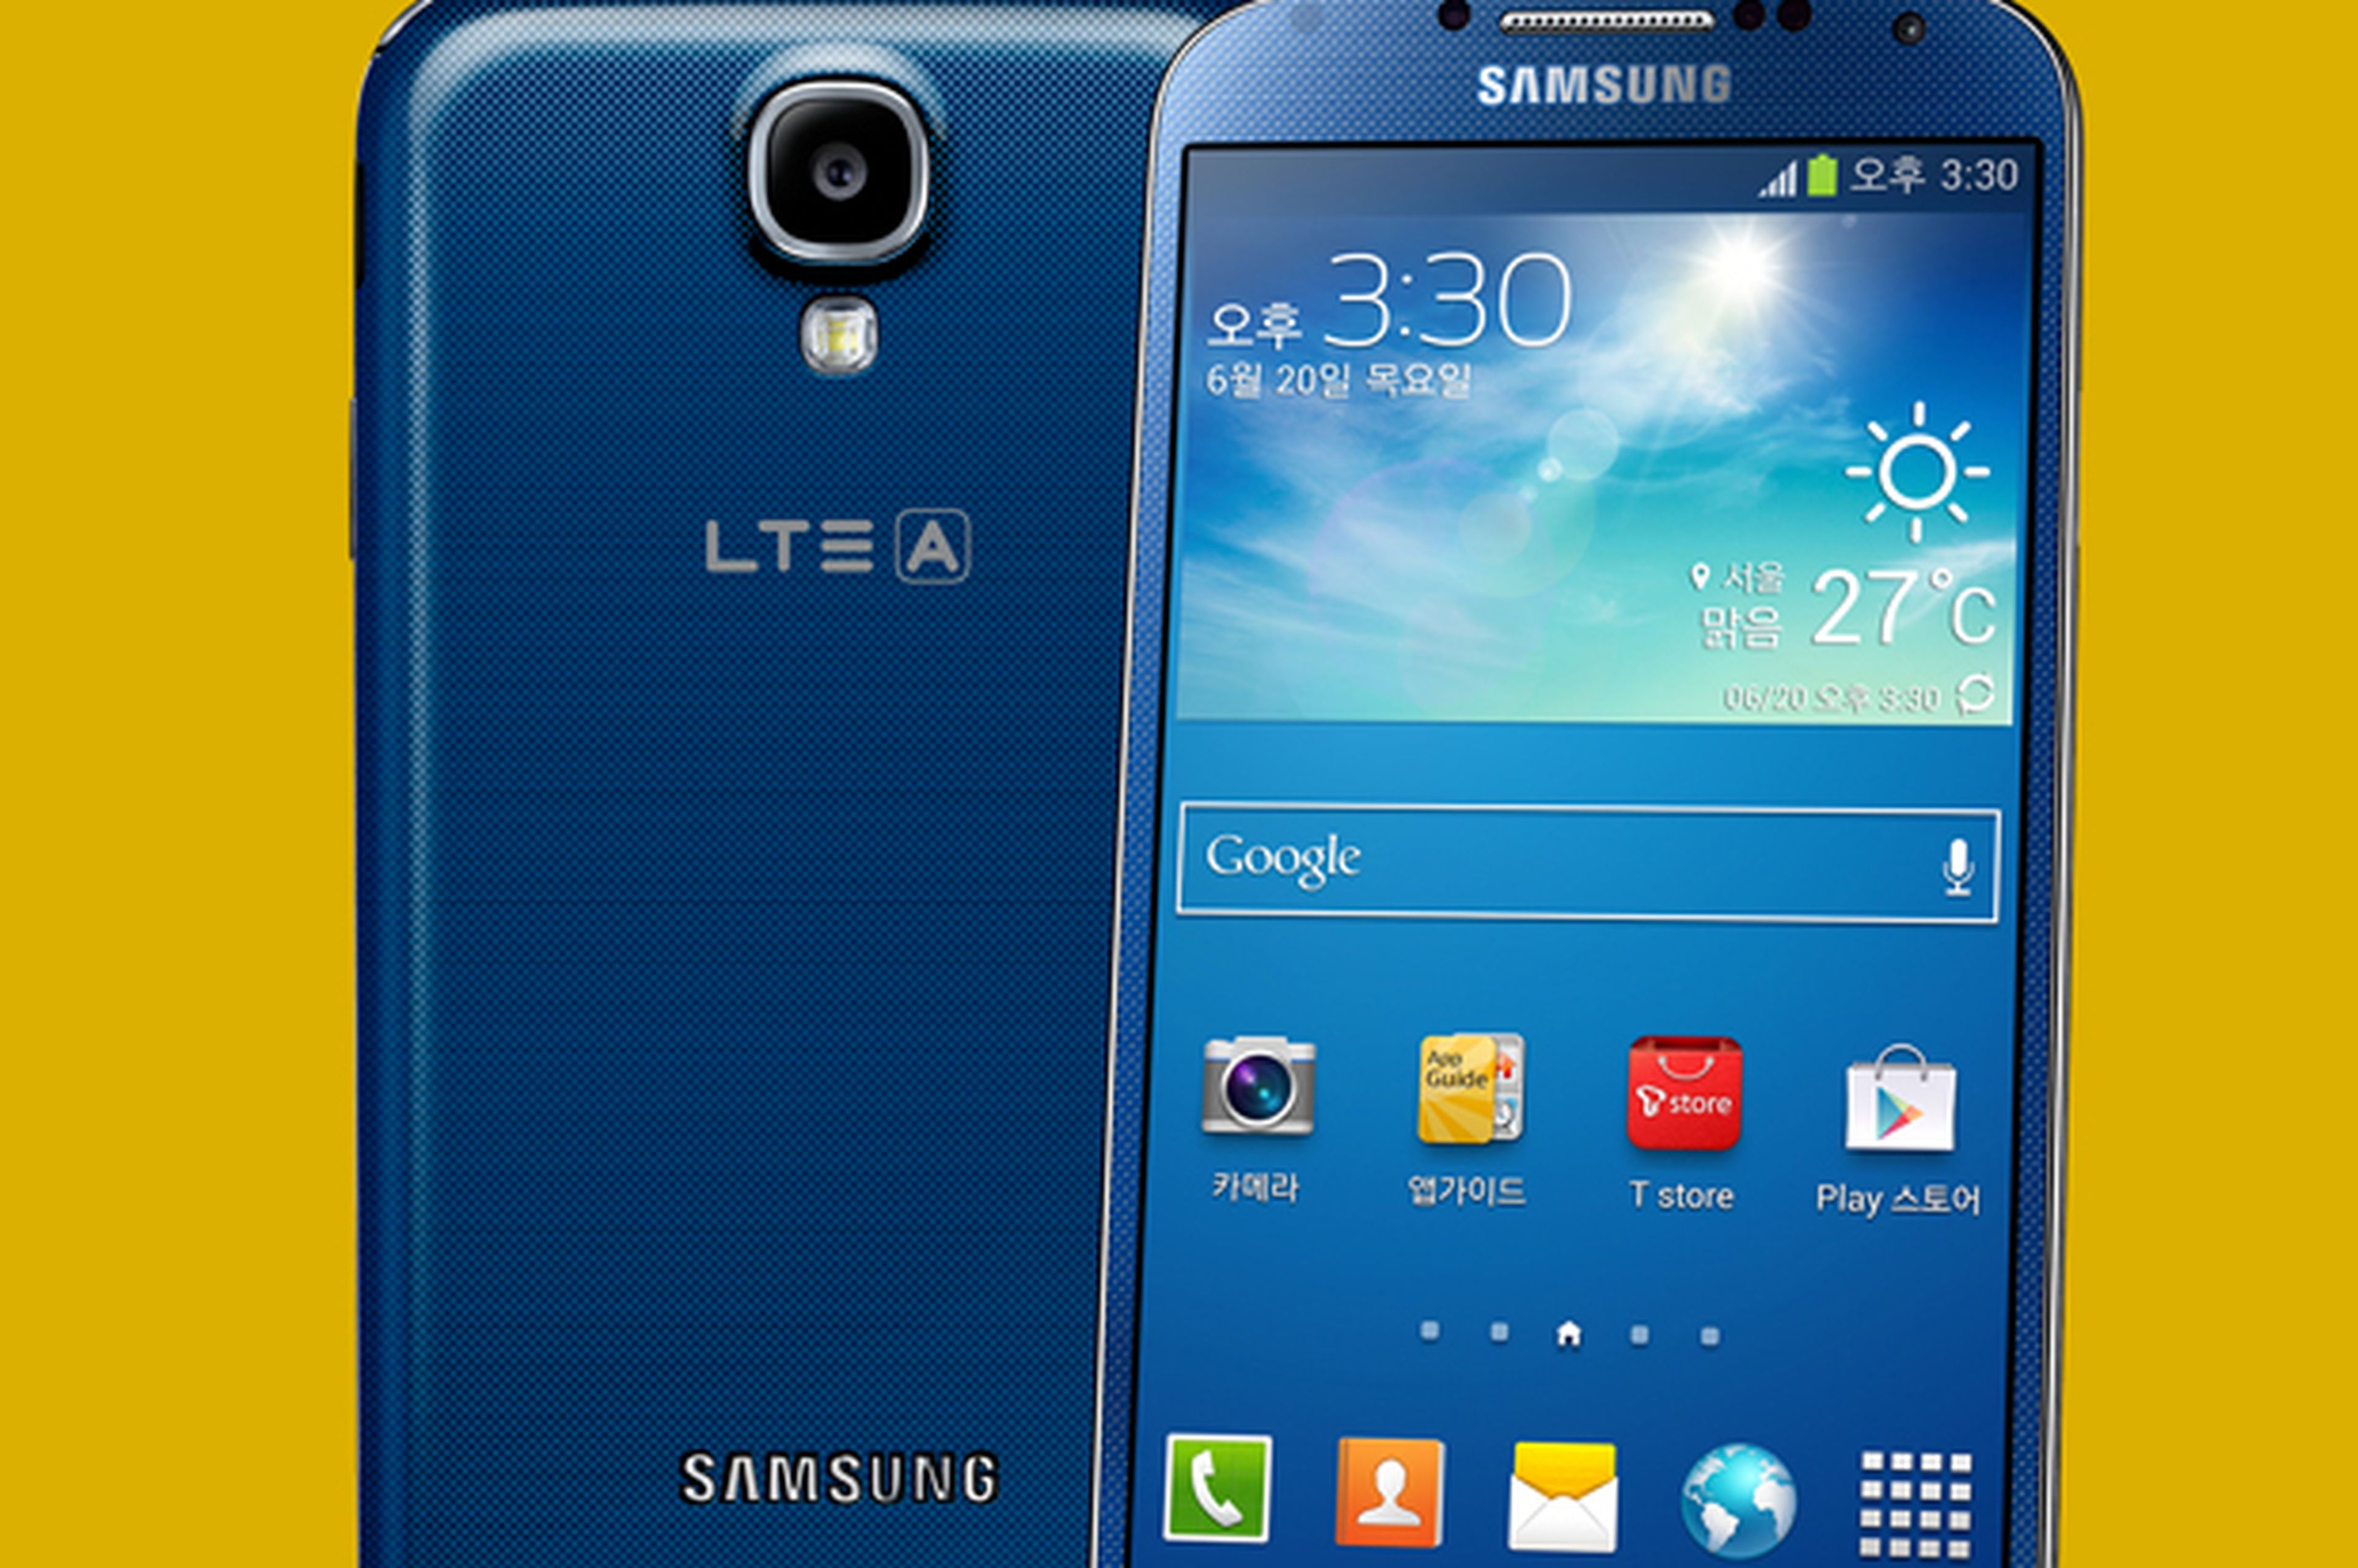 Samsung Galaxy S4 con LTE-A